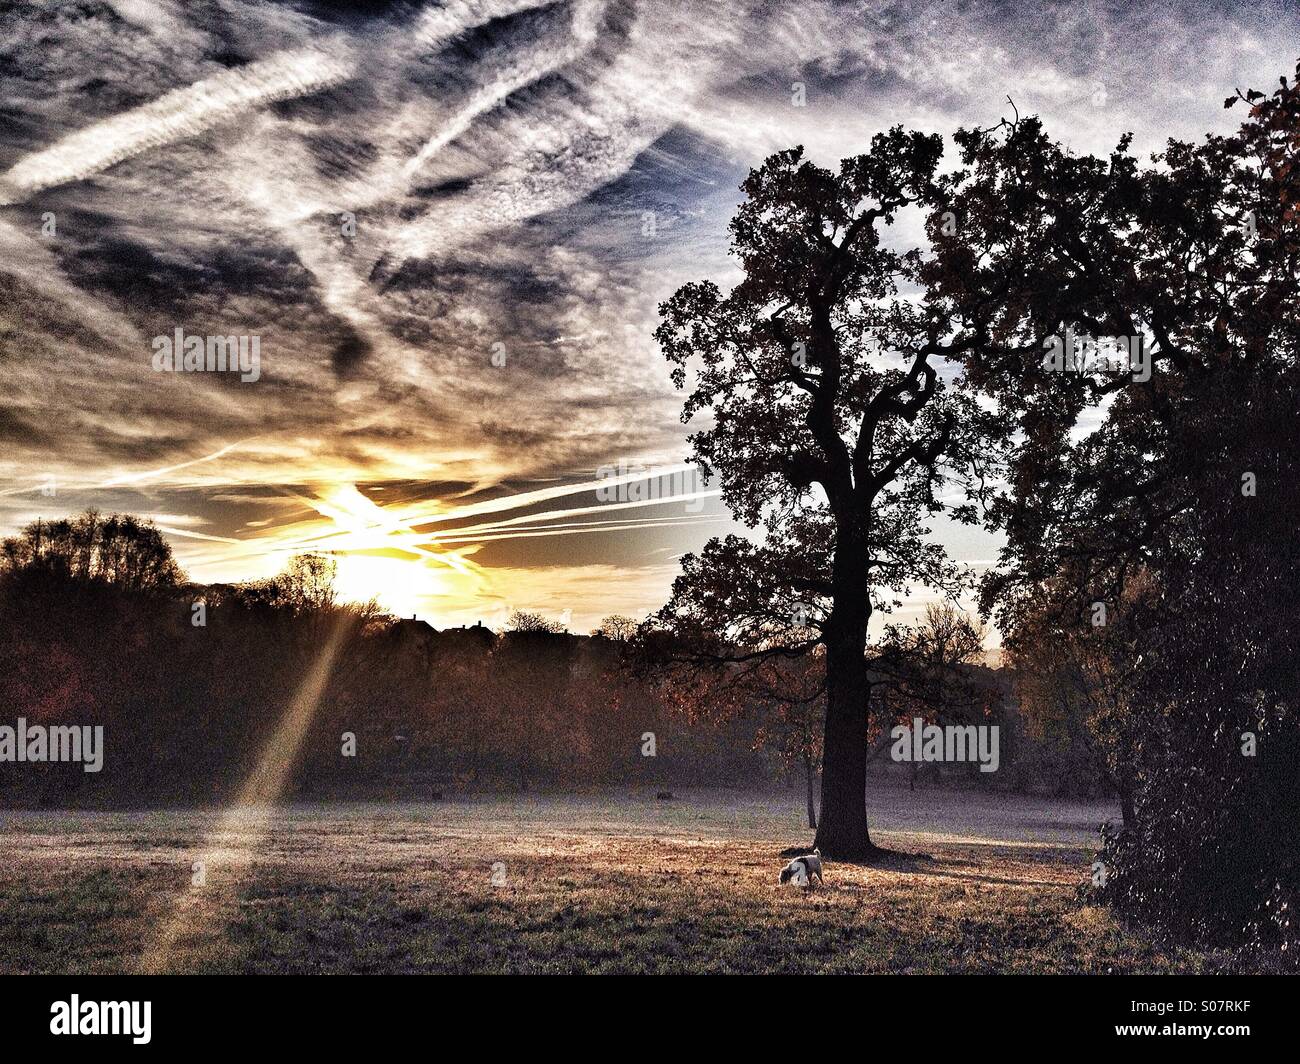 Bäume in einem Park bei Sonnenaufgang mit Flugzeug Dampf Wanderwege kreuzen in Himmel und Hund schnüffeln am Boden Stockfoto